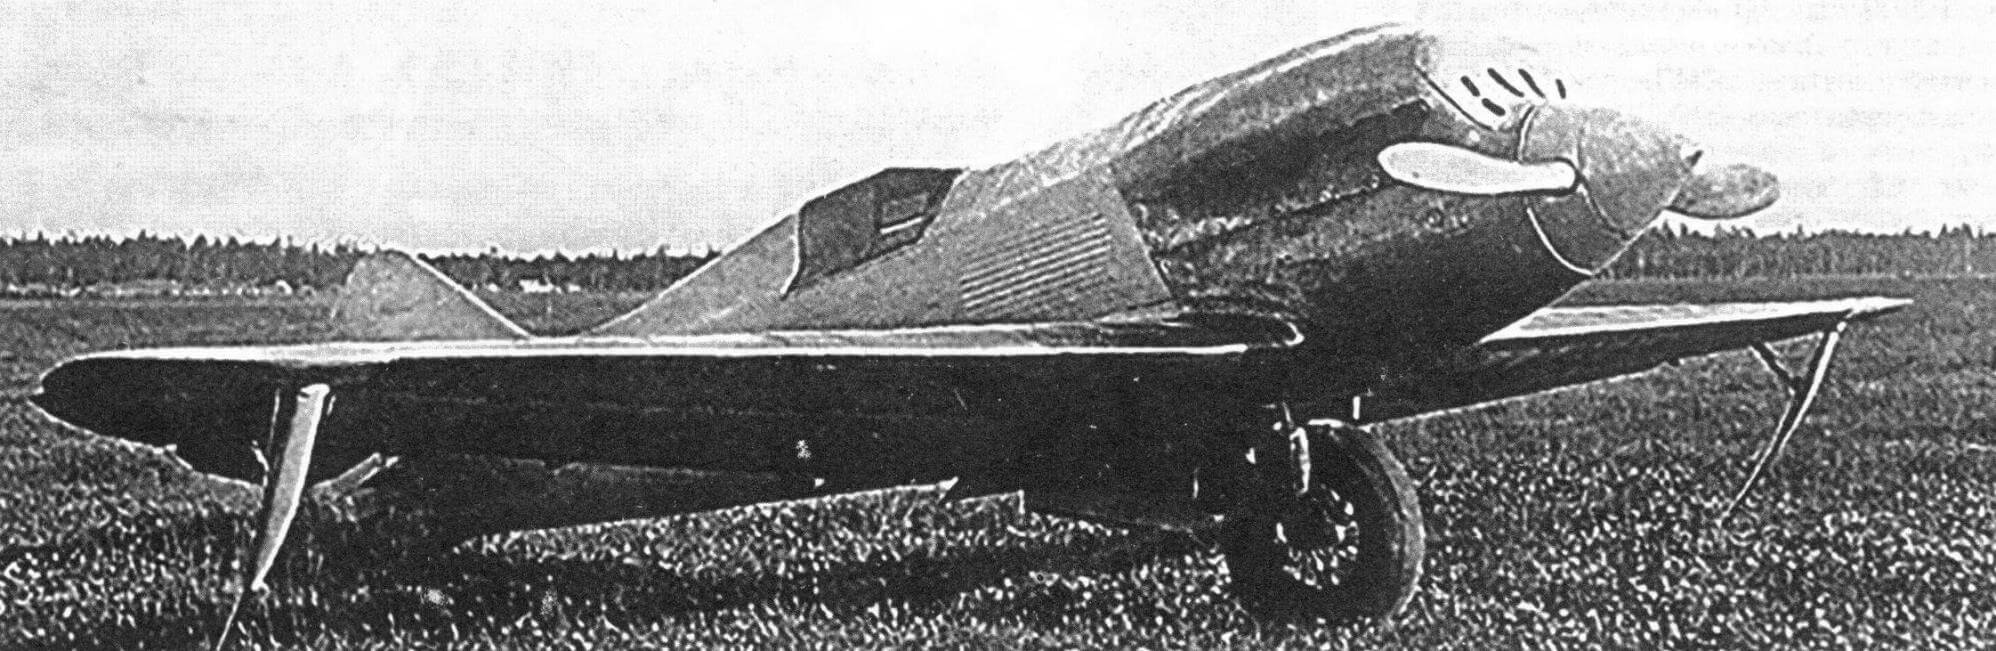 Экспериментальный самолет «Сталь-6», 1933 год